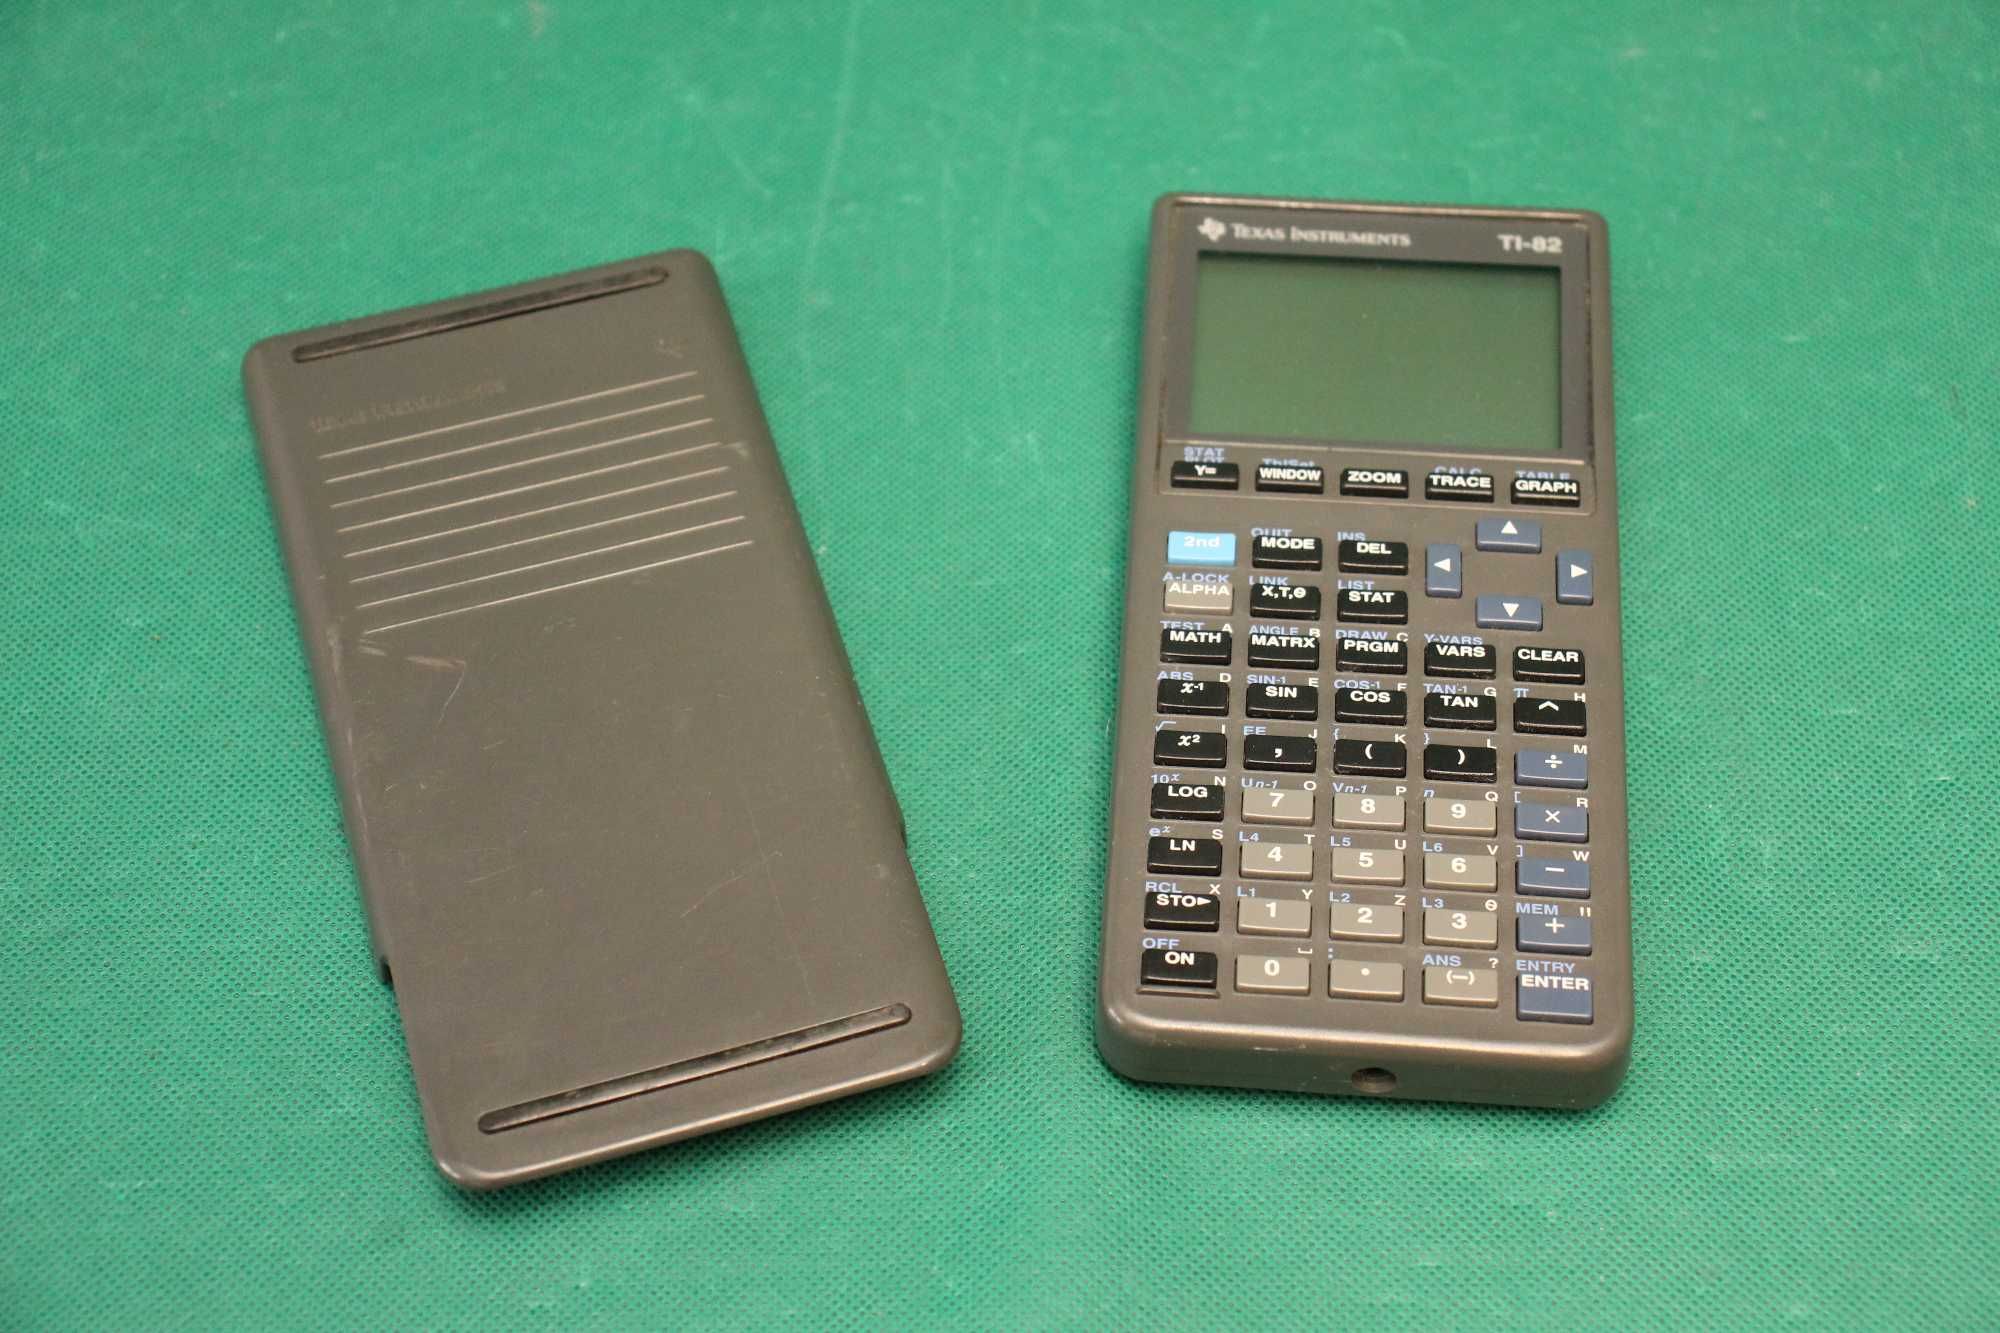 Kalkulator graficzny TEXAS INSTRUMENTS TI-82